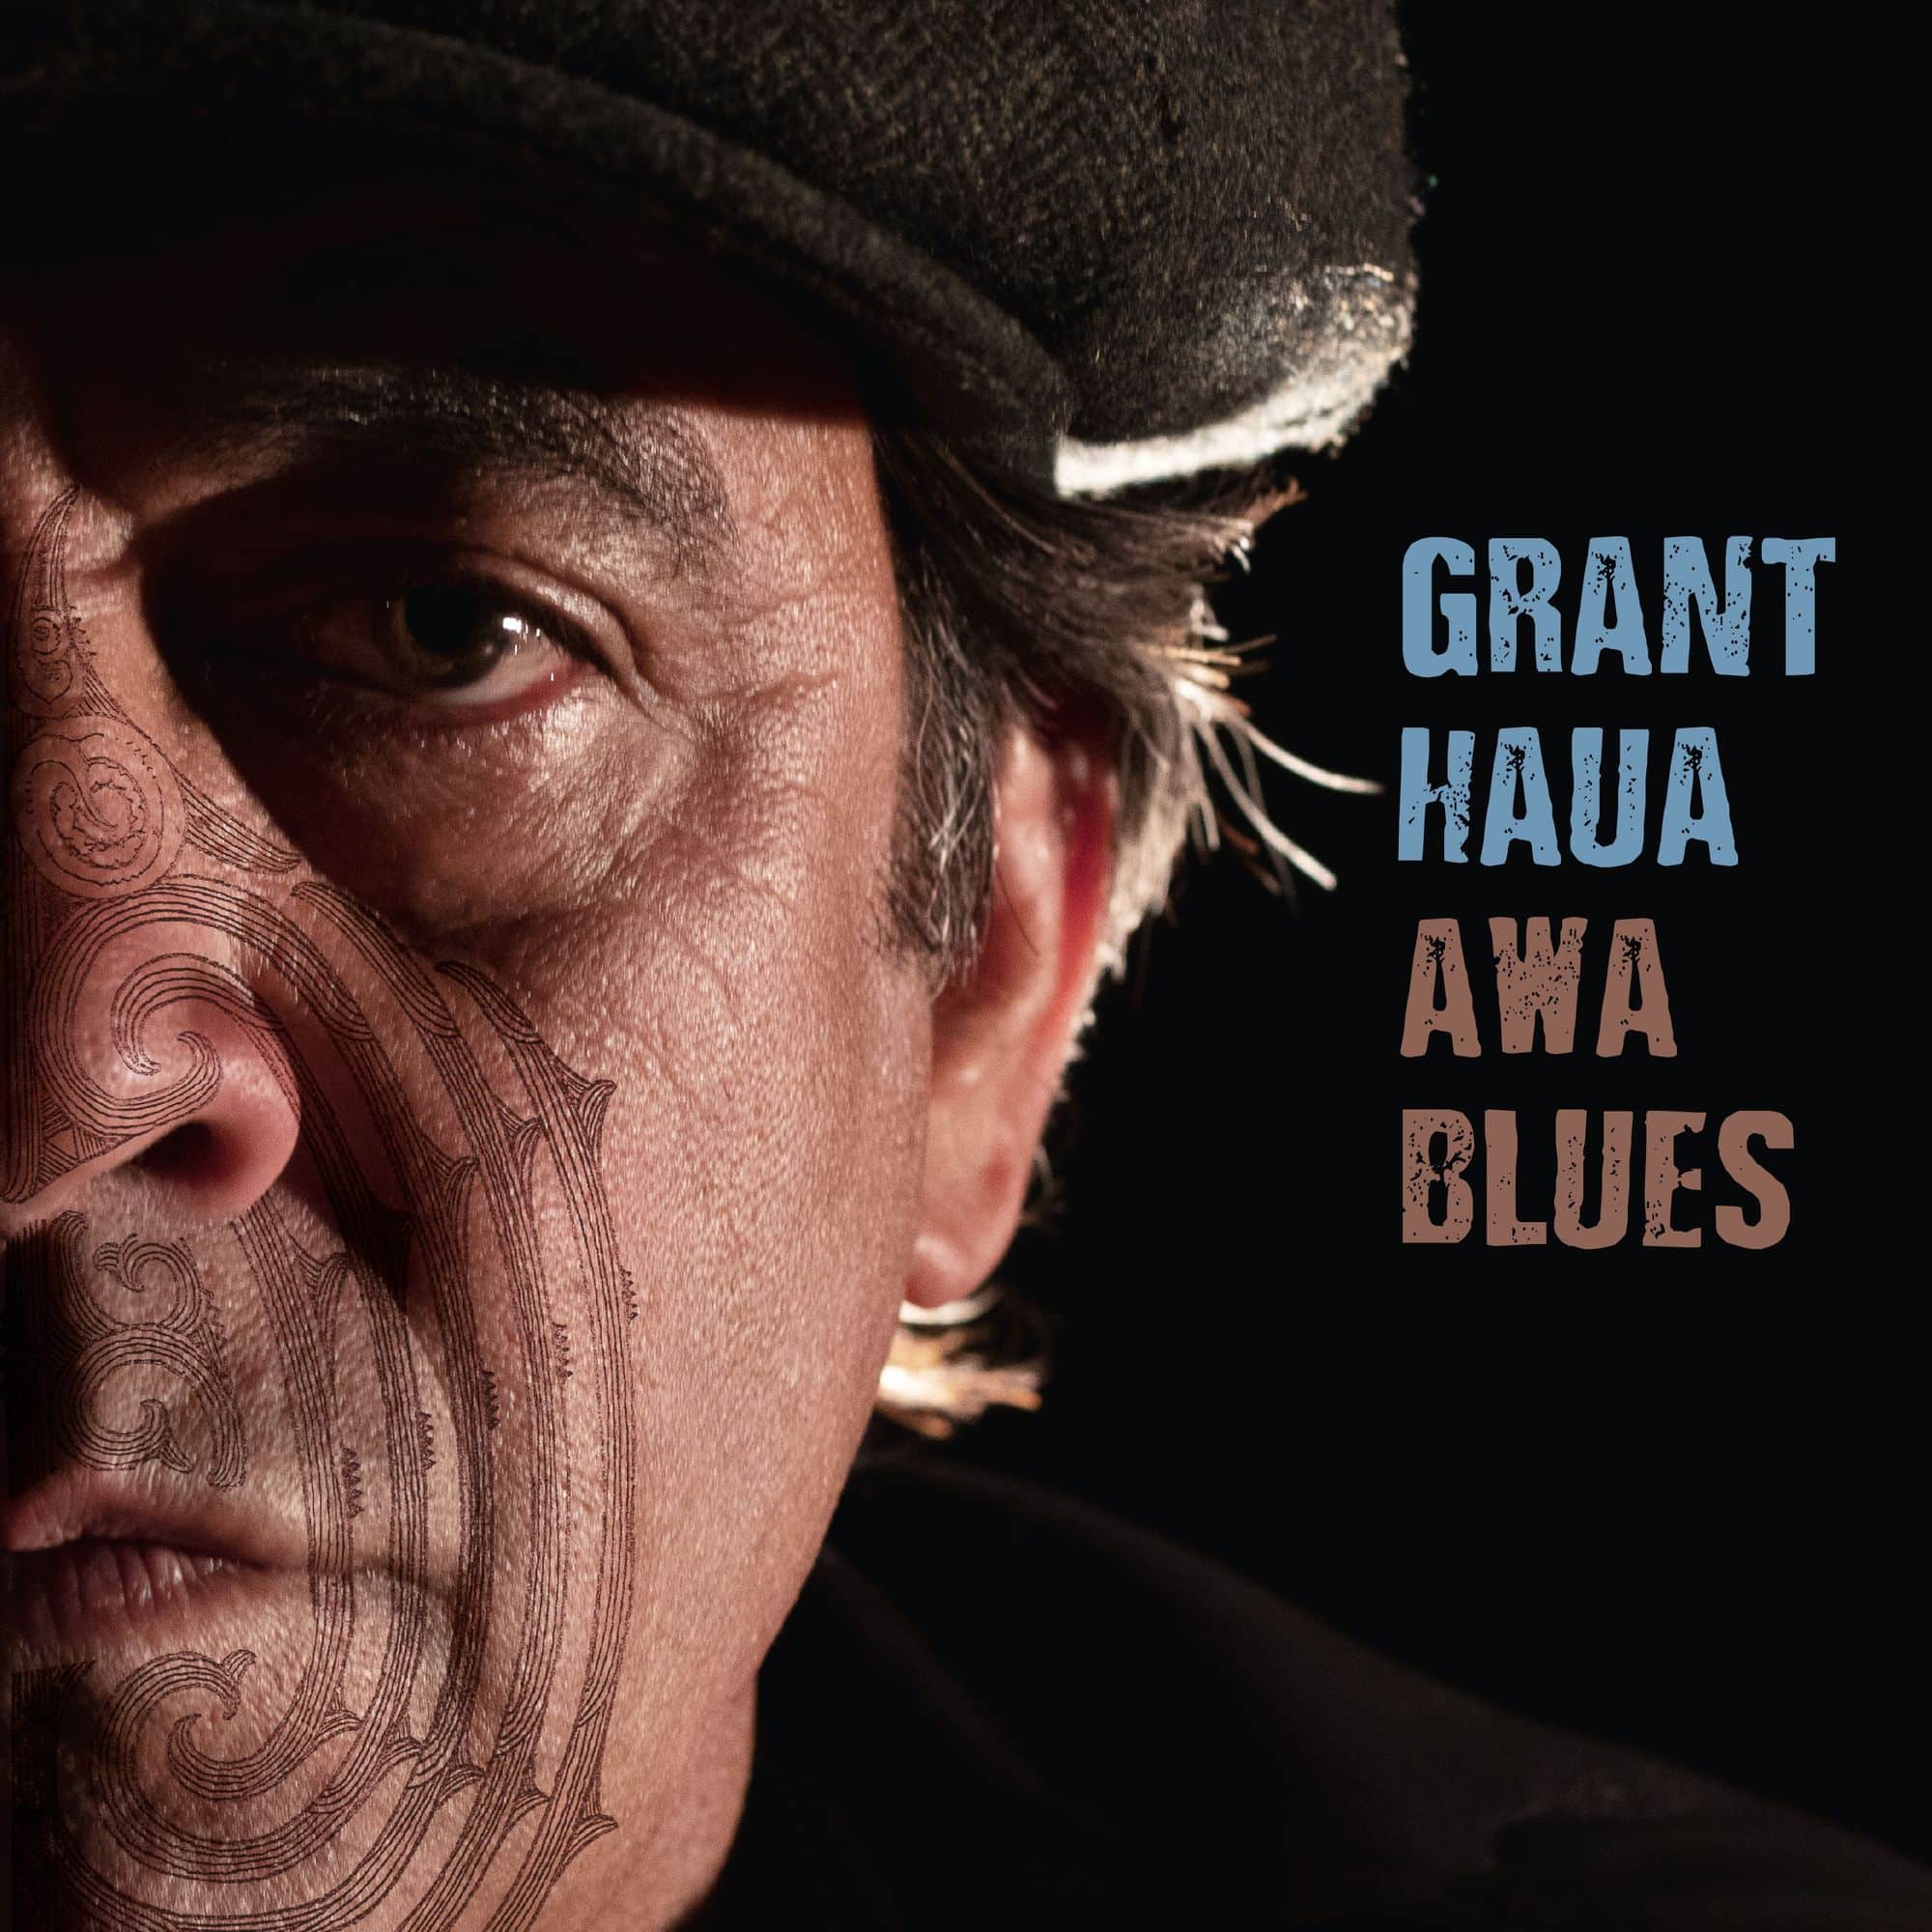 Résultat de recherche d'images pour "GRANT HAUA awa blues"